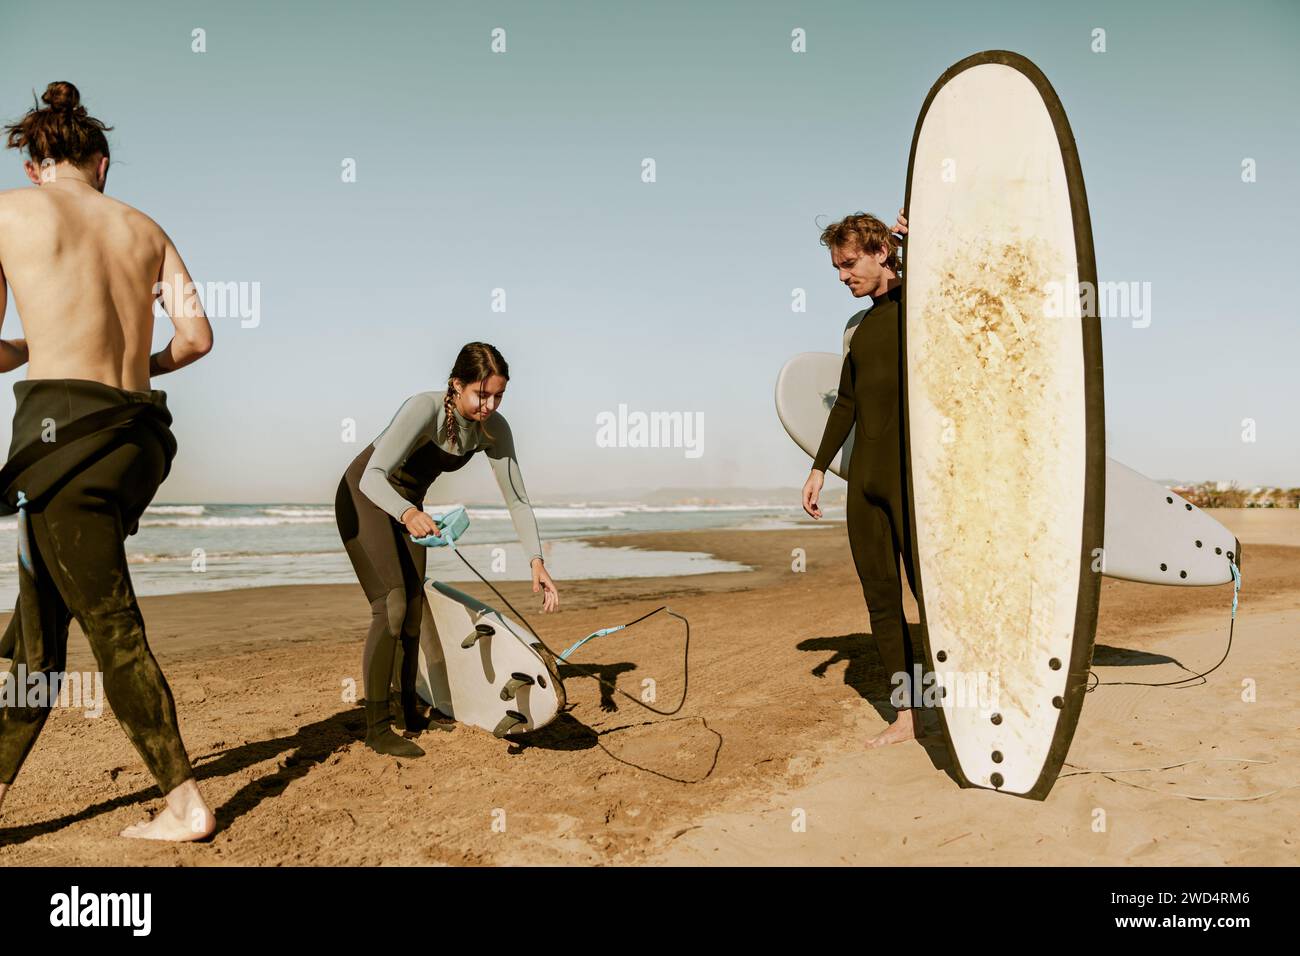 Fai surf in muta sulla spiaggia con le tavole da surf e preparati a cavalcare le onde Foto Stock